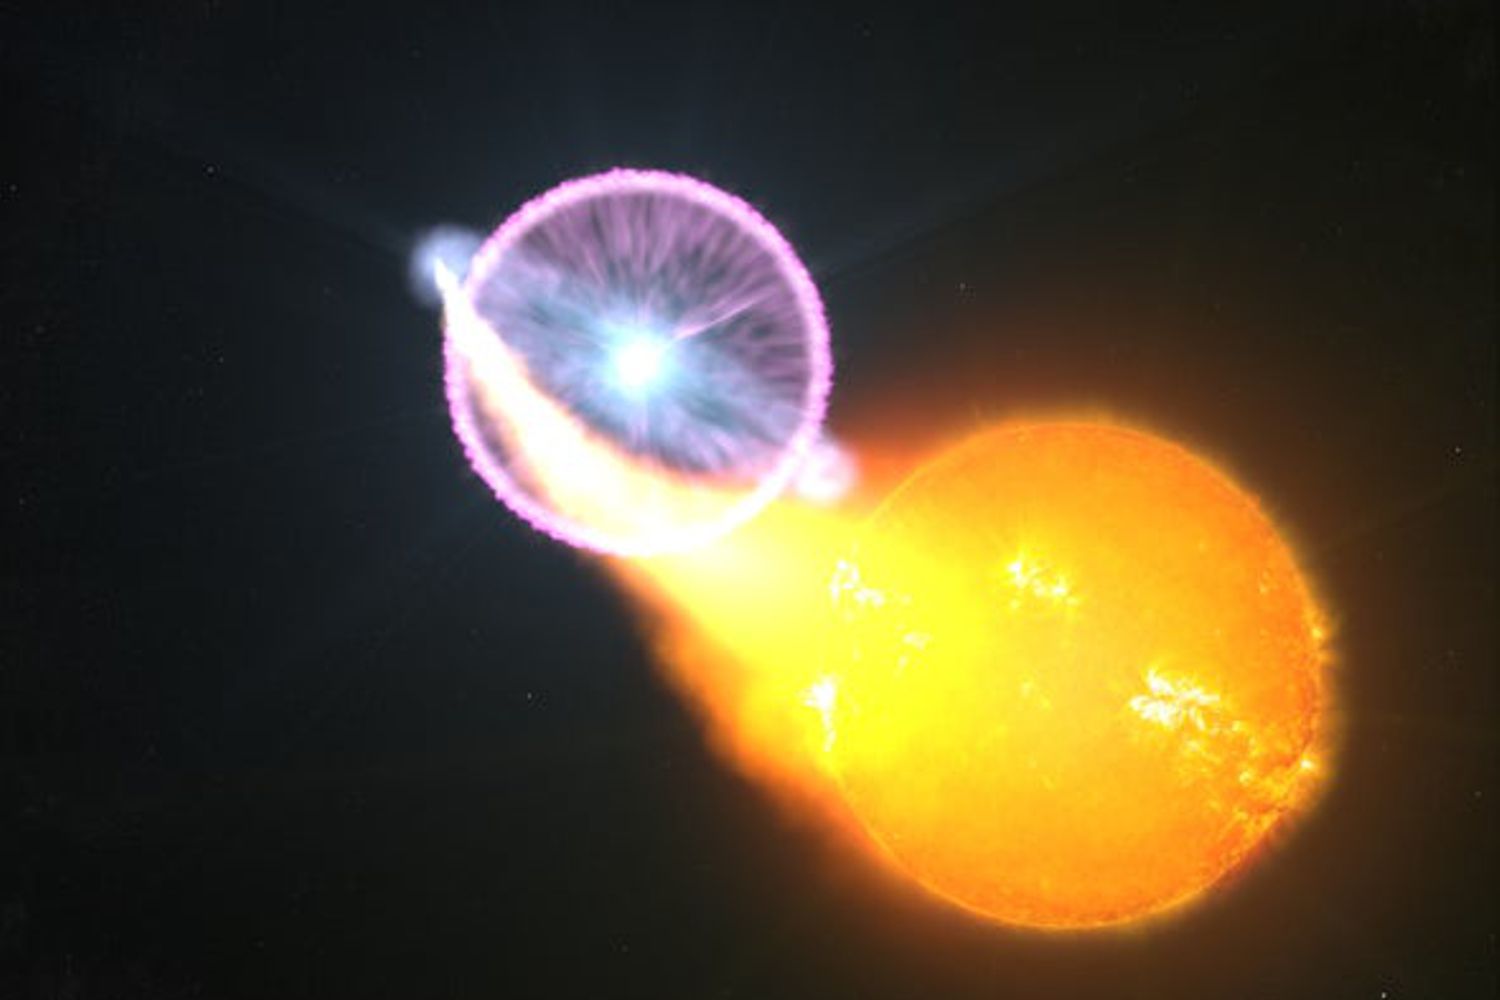 Concepção artística de uma explosão de uma nova clássica. (Crédito: Scott Wiessinger, NASA – Goddard Space Flight Center)